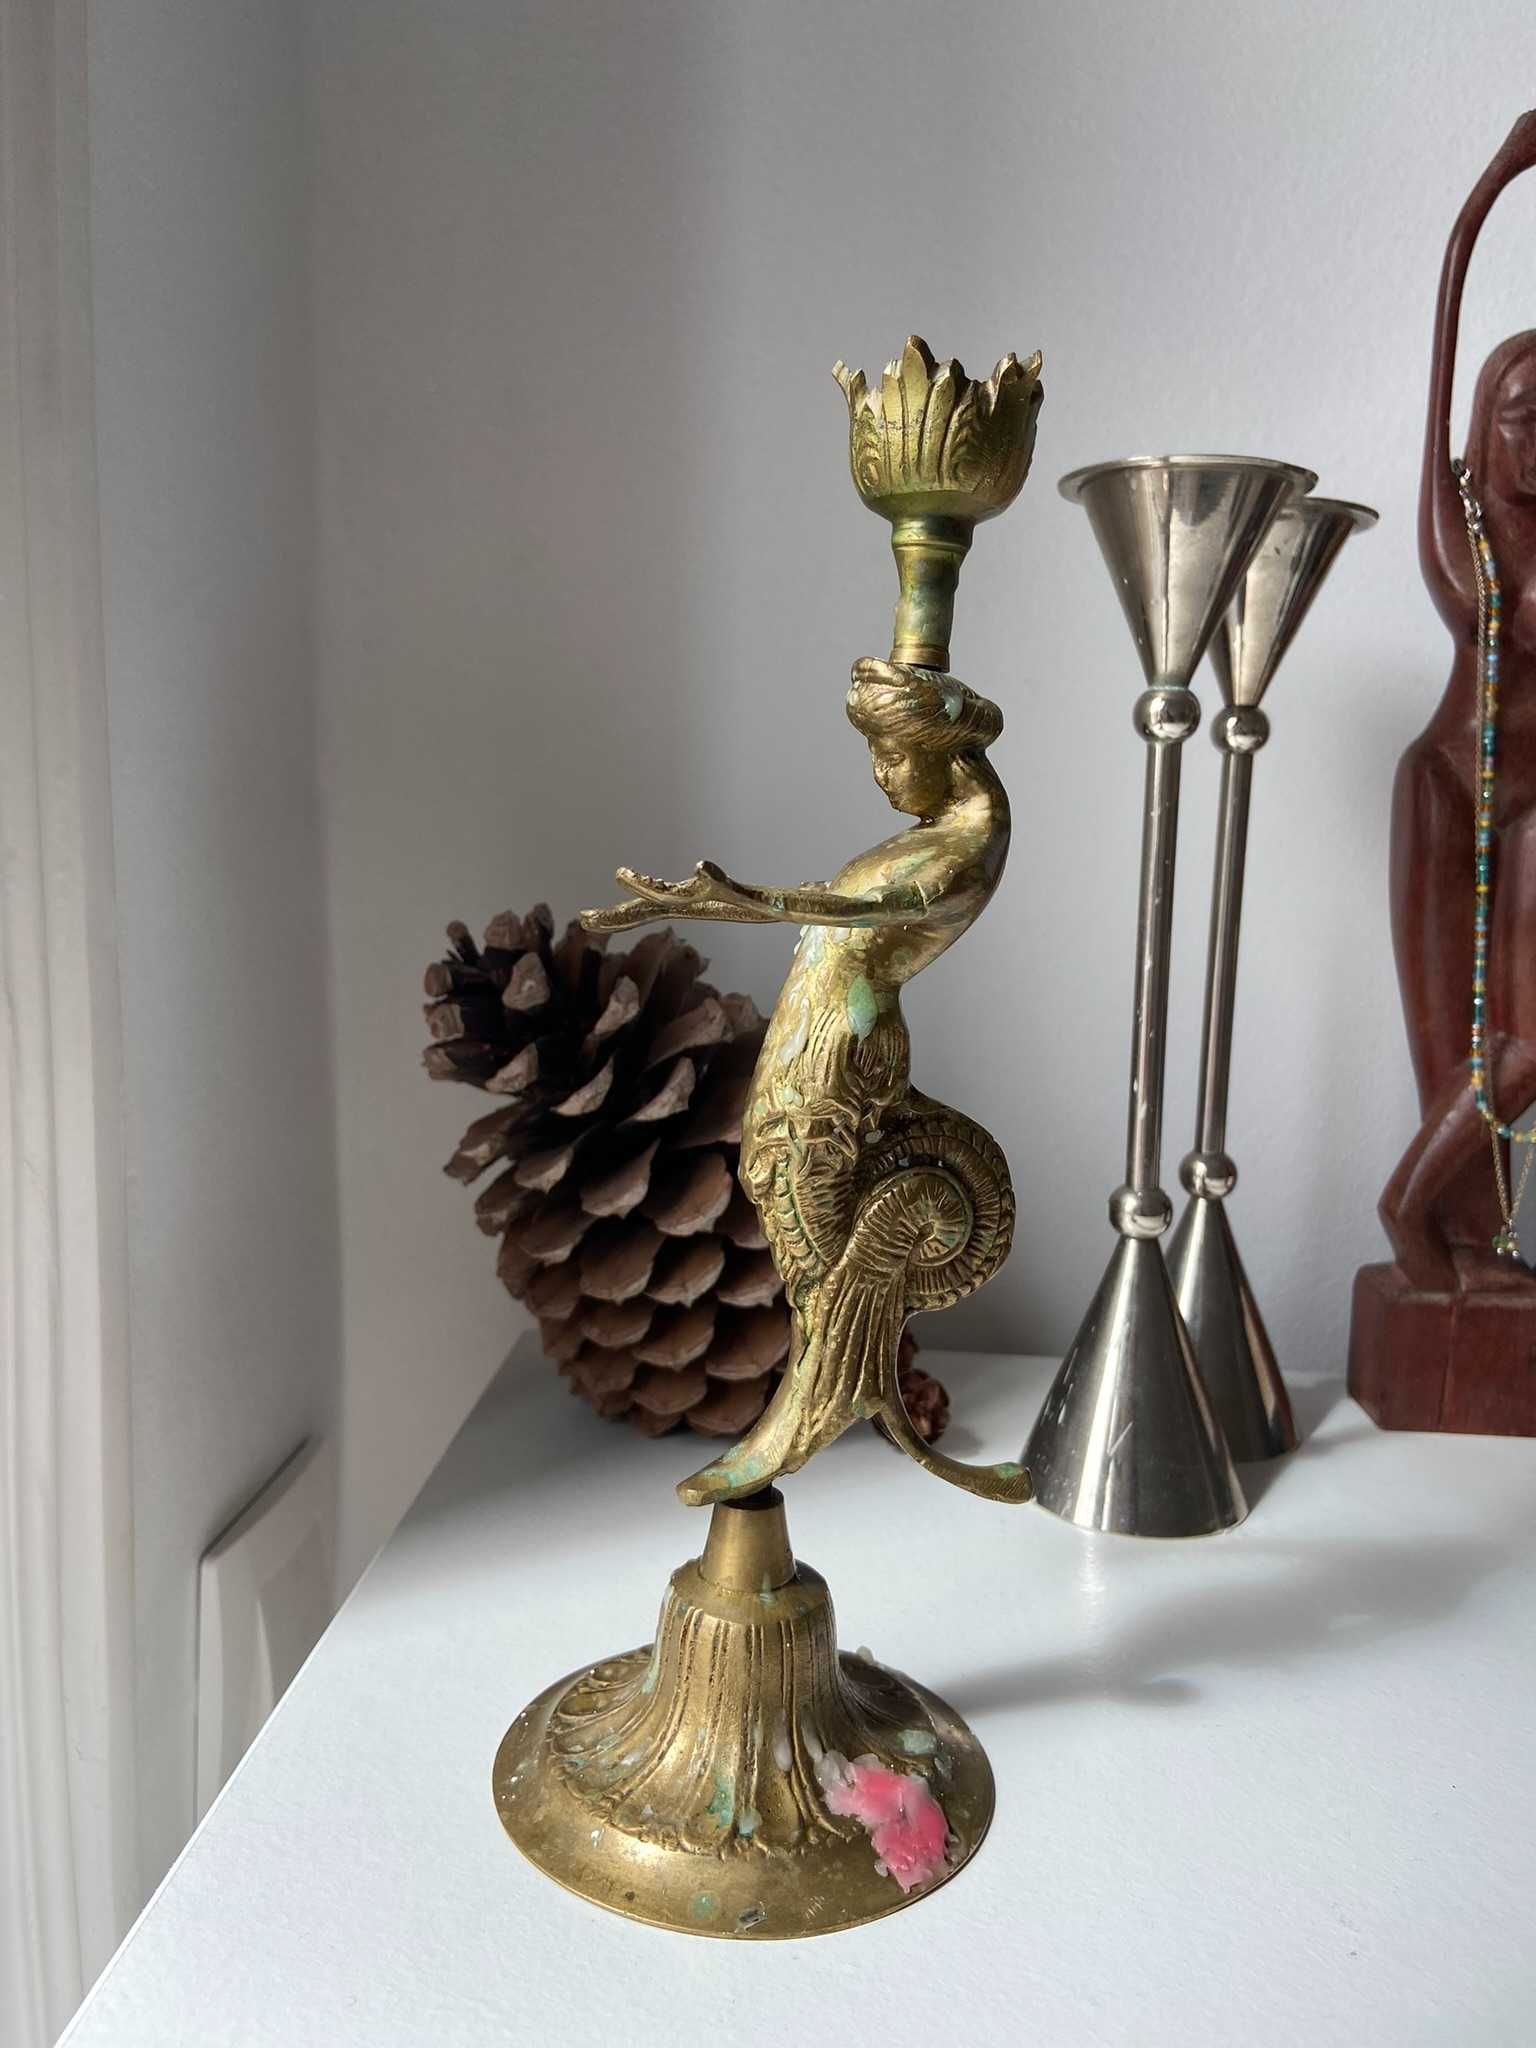 Bronze candlestick / castiçal de bronze